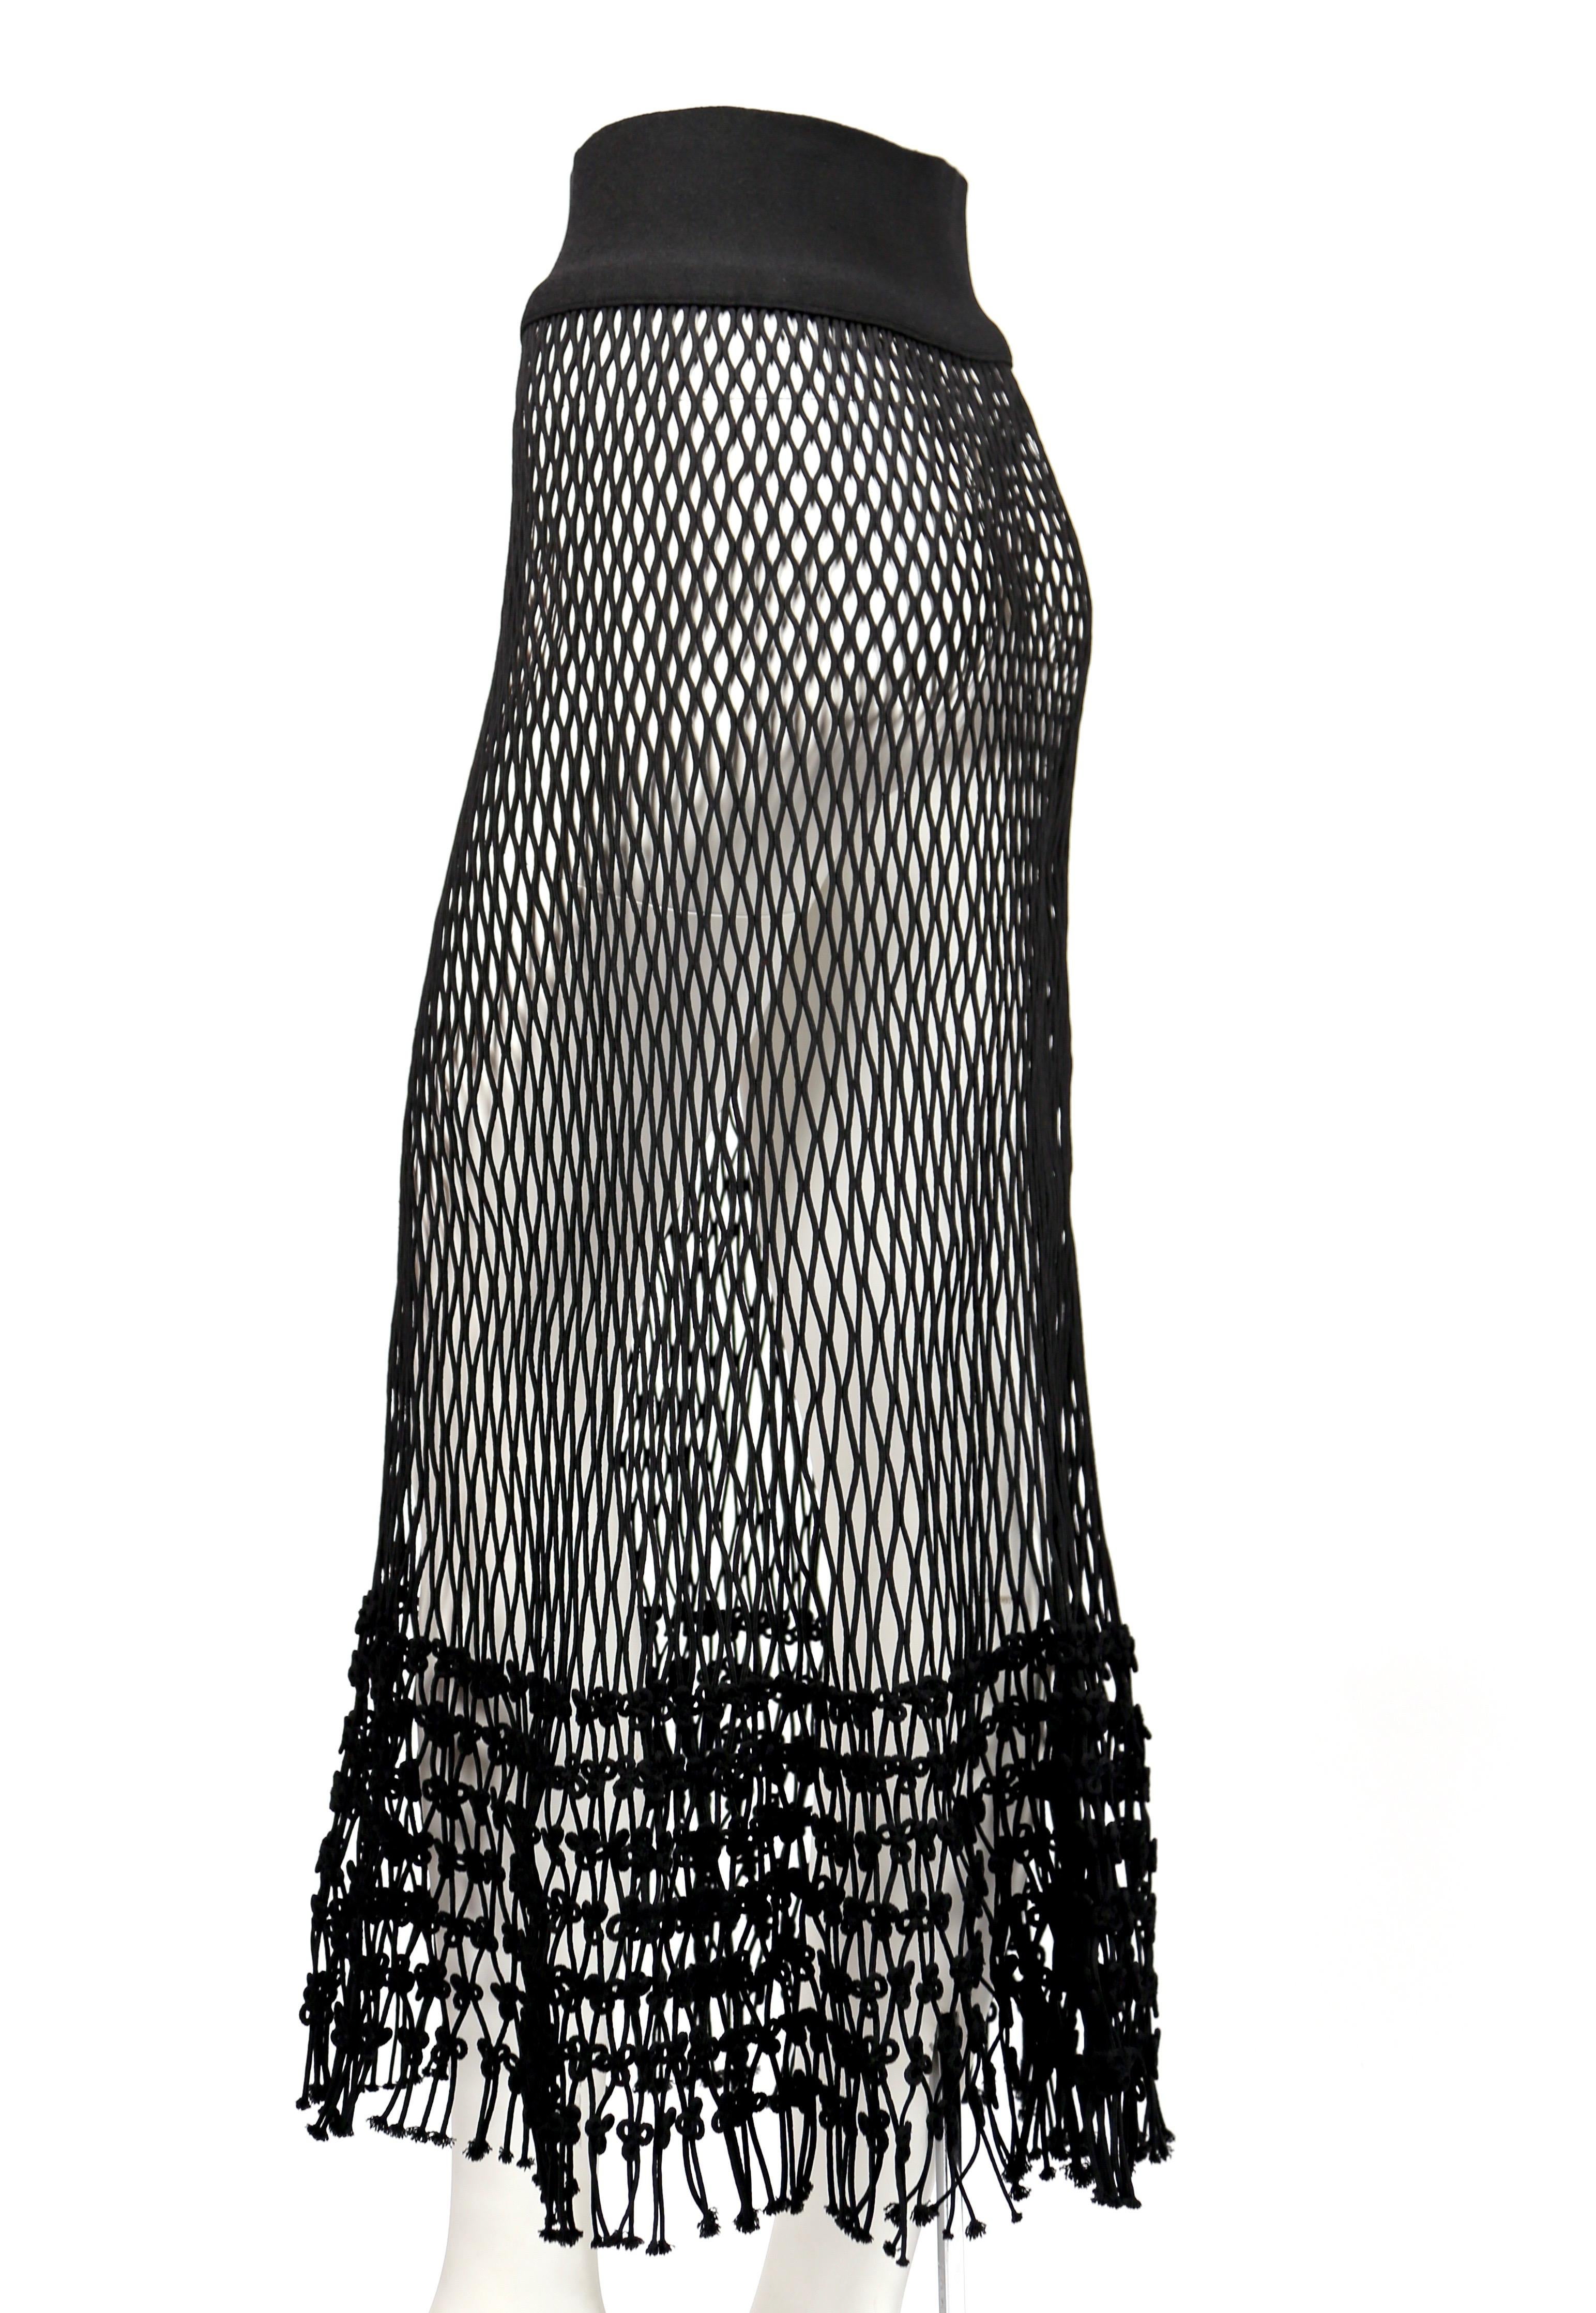 black net skirt